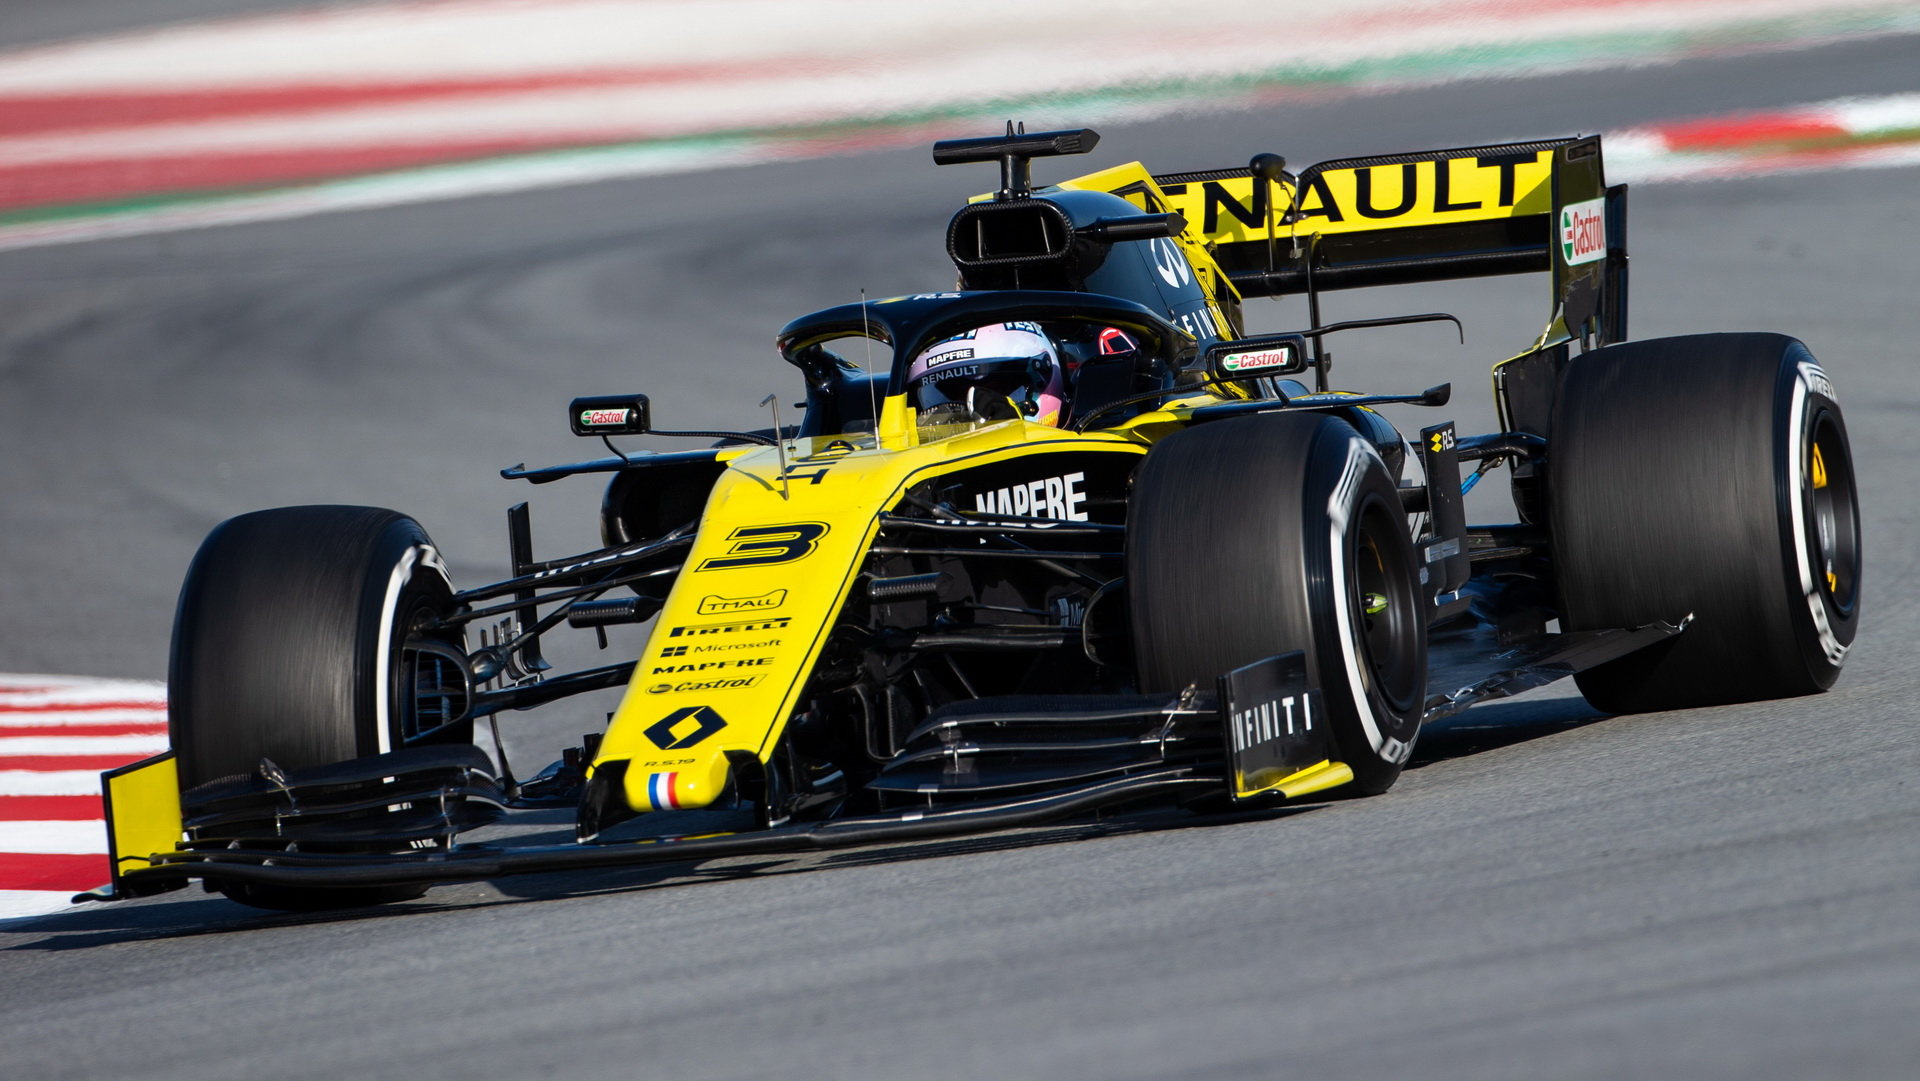 Daniel Ricciardo v novém voze Renault RS19 při testech v Barceloně